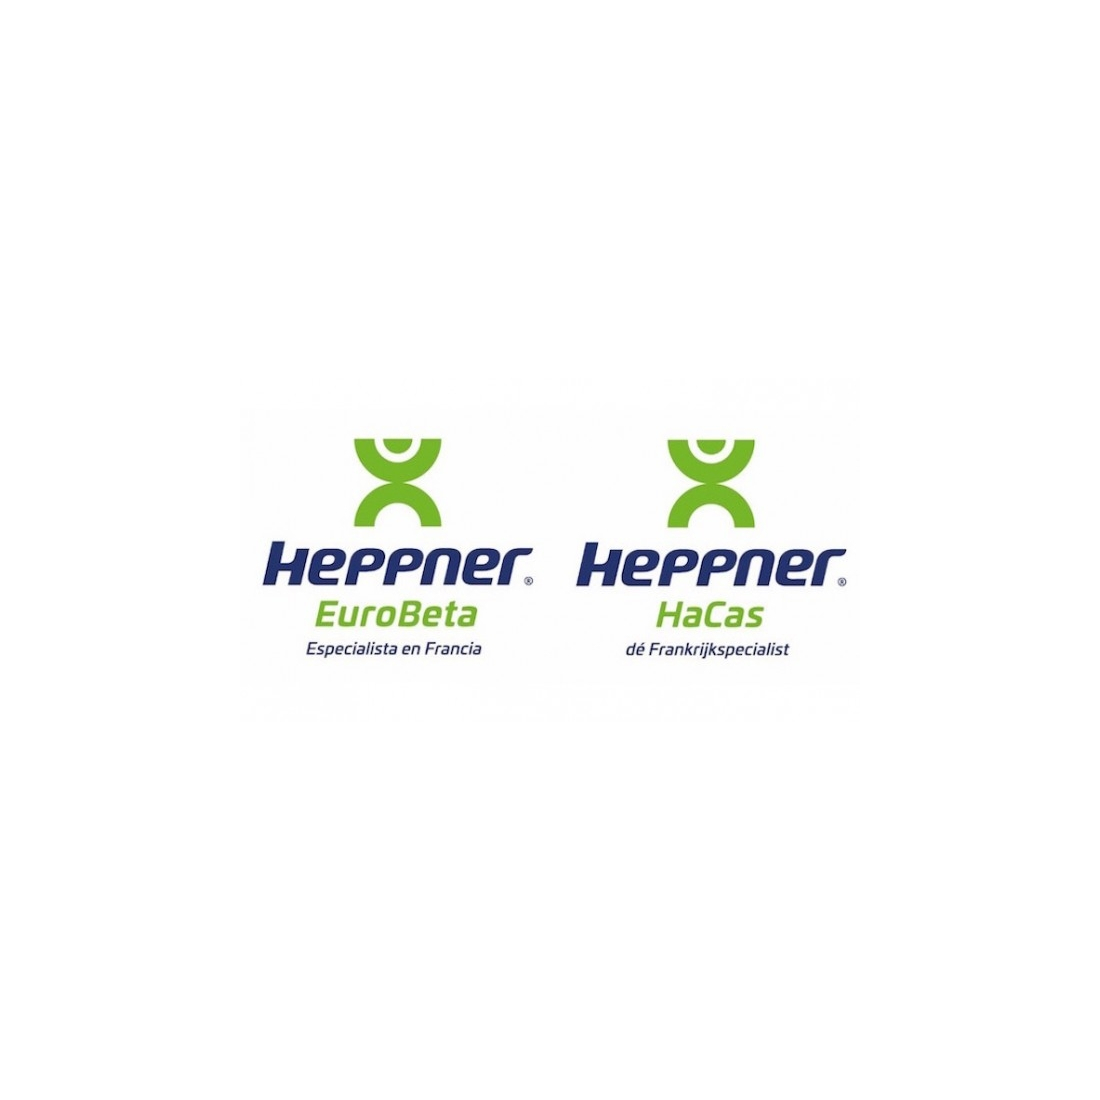 Import Export Domicile HEPPNER 990-99EX  Instruction Manual Guides